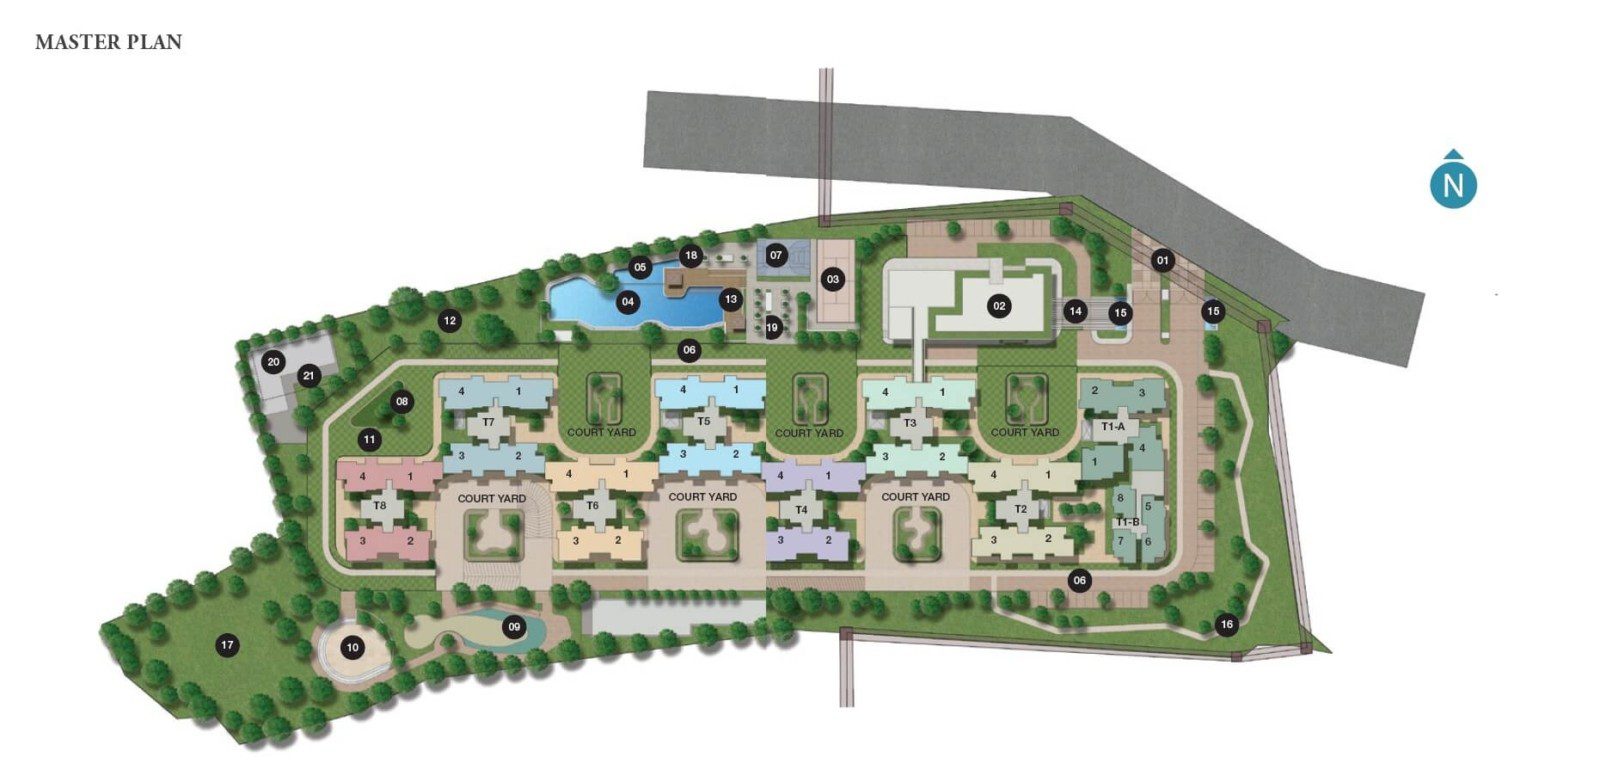 Sobha Lake Gardens Master Plan